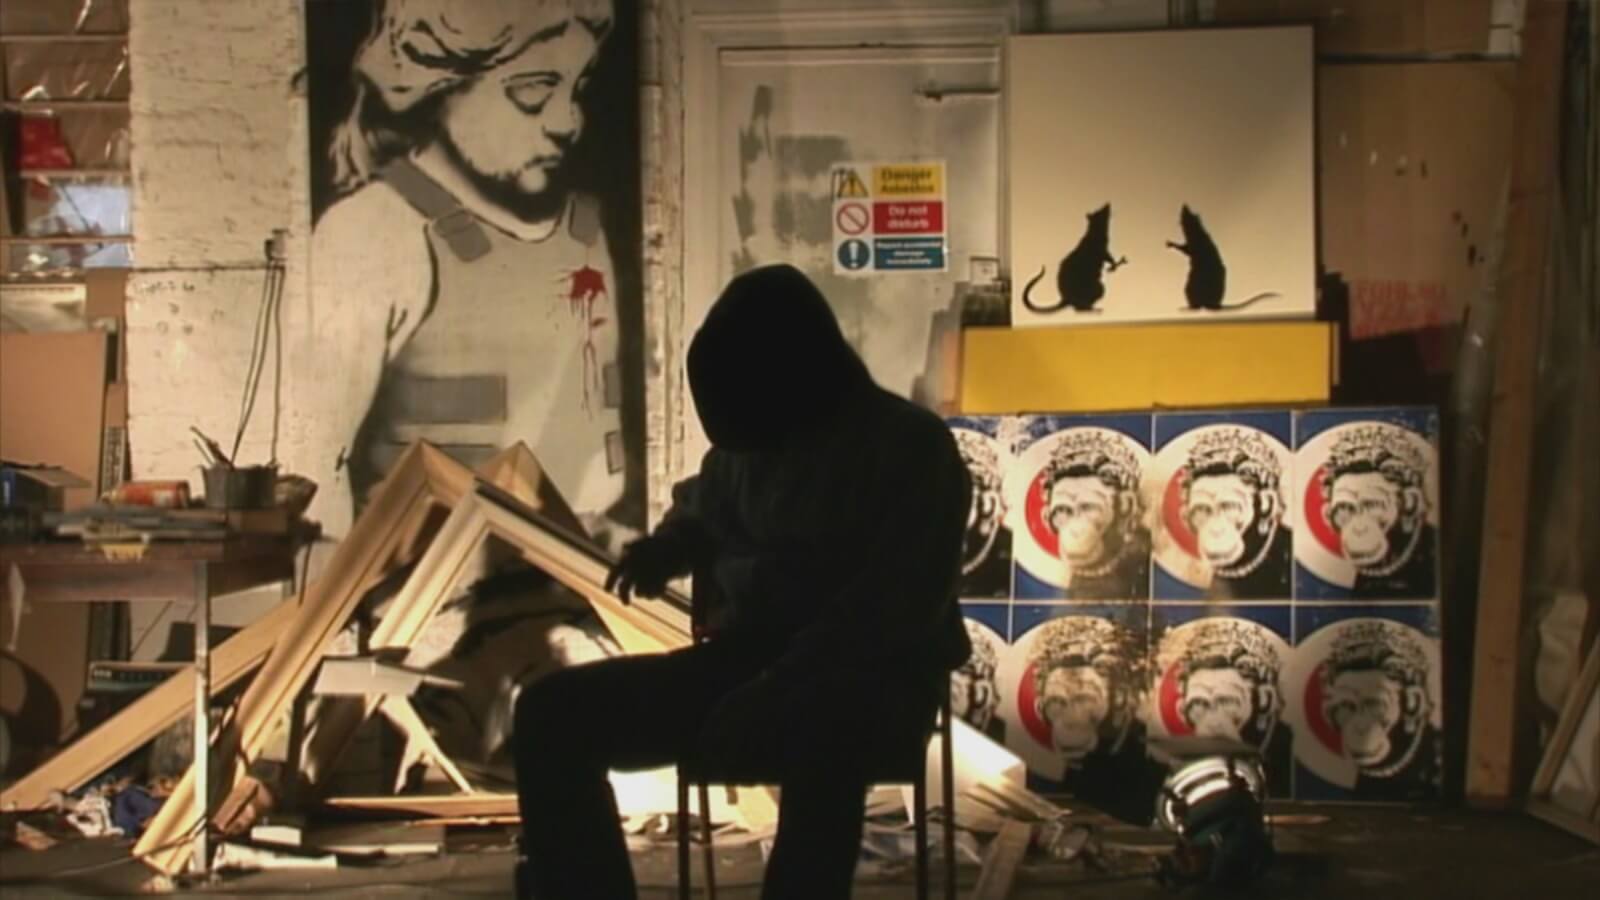 Los 5 rumores más sonados sobre la identidad de Banksy